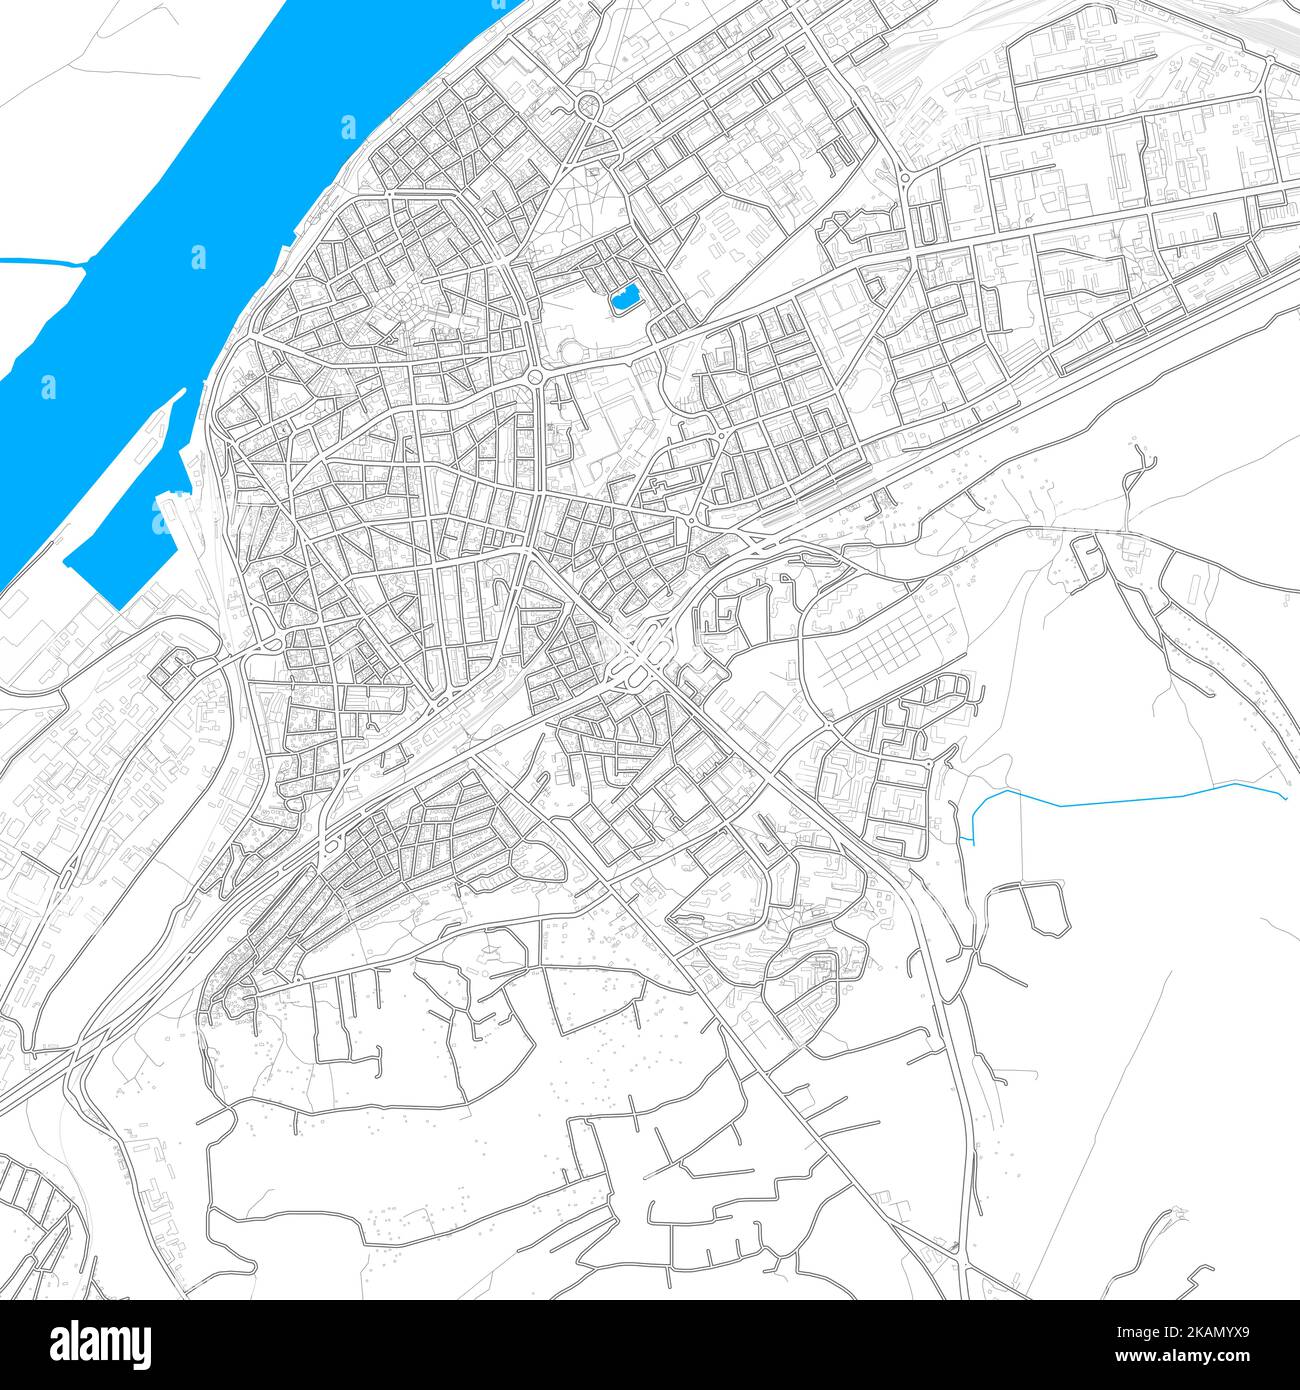 Ruse, Bulgarien hochauflösende Vektorkarte mit editierbaren Pfaden. Helle Umrisse für Hauptstraßen. Verwenden Sie es für jeden gedruckten und digitalen Hintergrund. Blauer Sha Stock Vektor